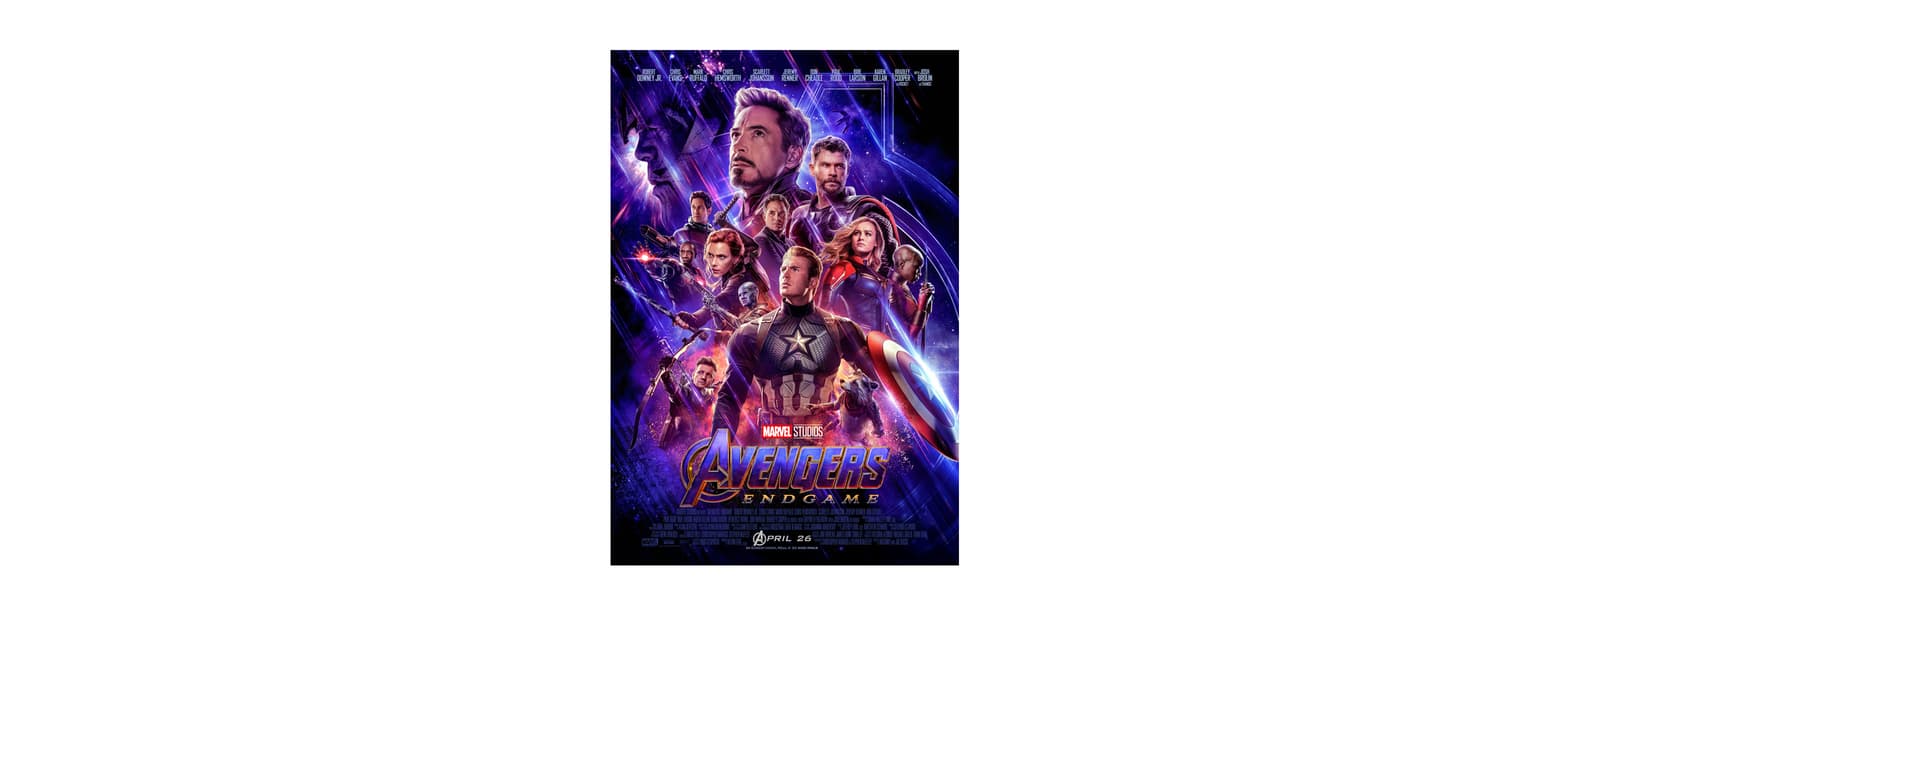 Avengers: Endgame Movie Poster Avengers 4